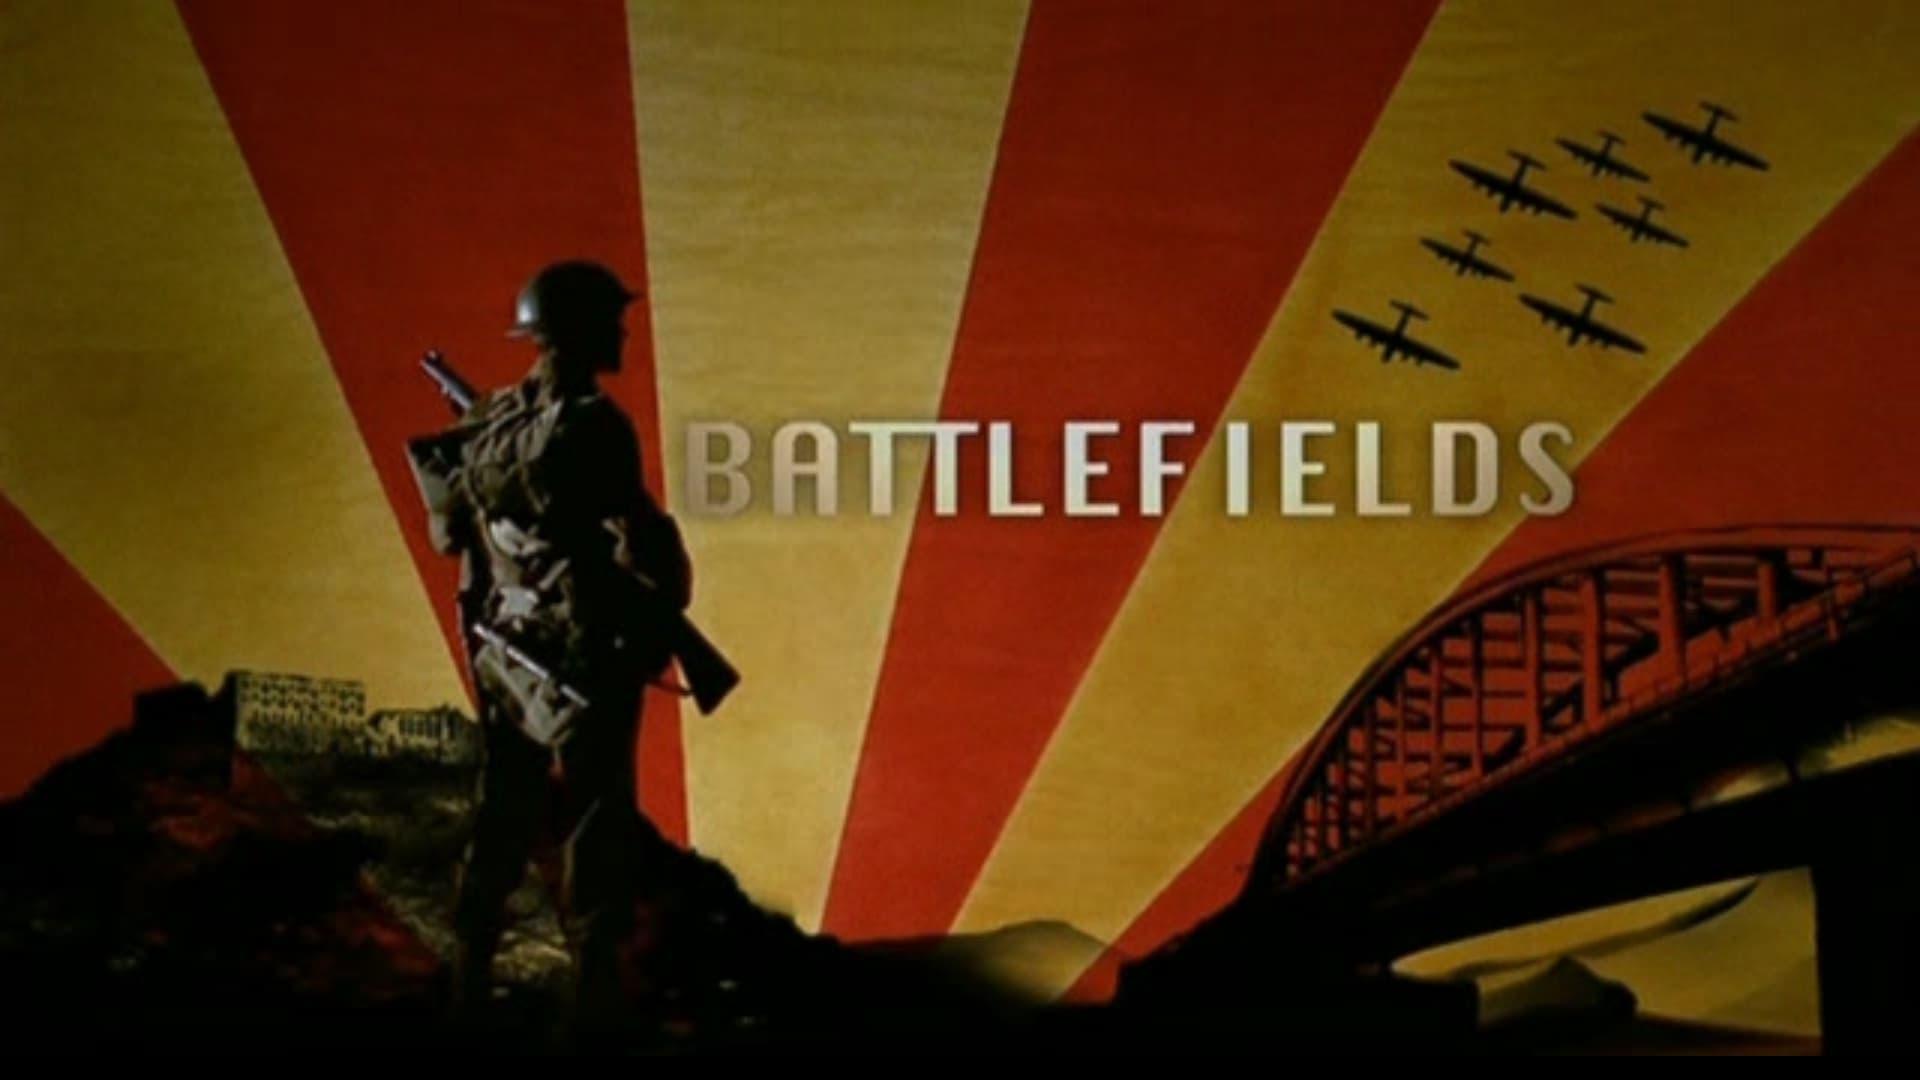 Battlefields backdrop